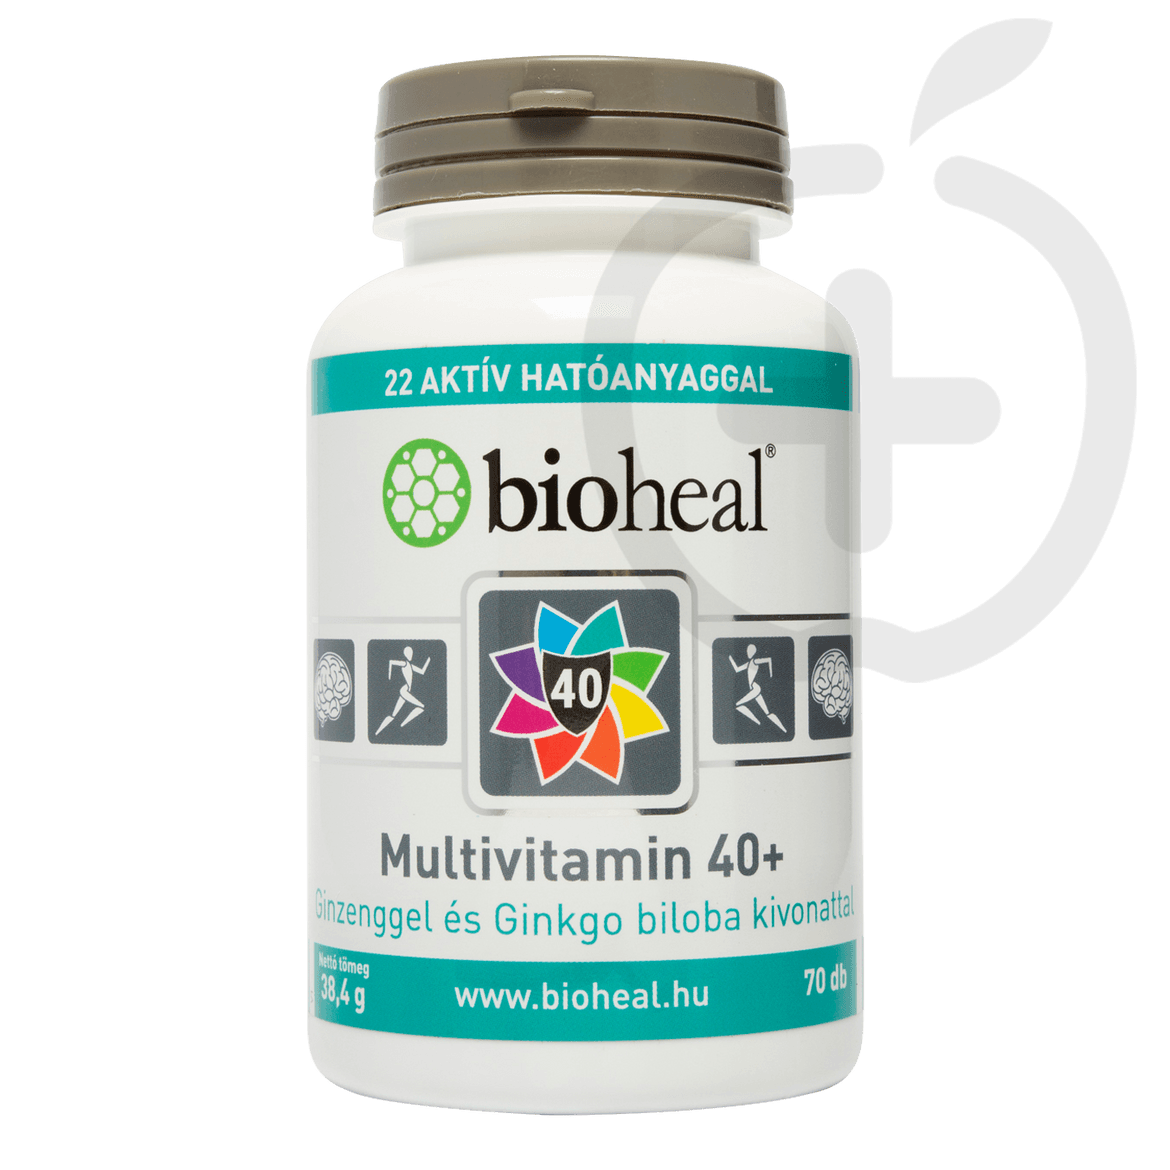 Bioheal multivitamin 40+ filmtabletta 40 év felettieknek 135 g